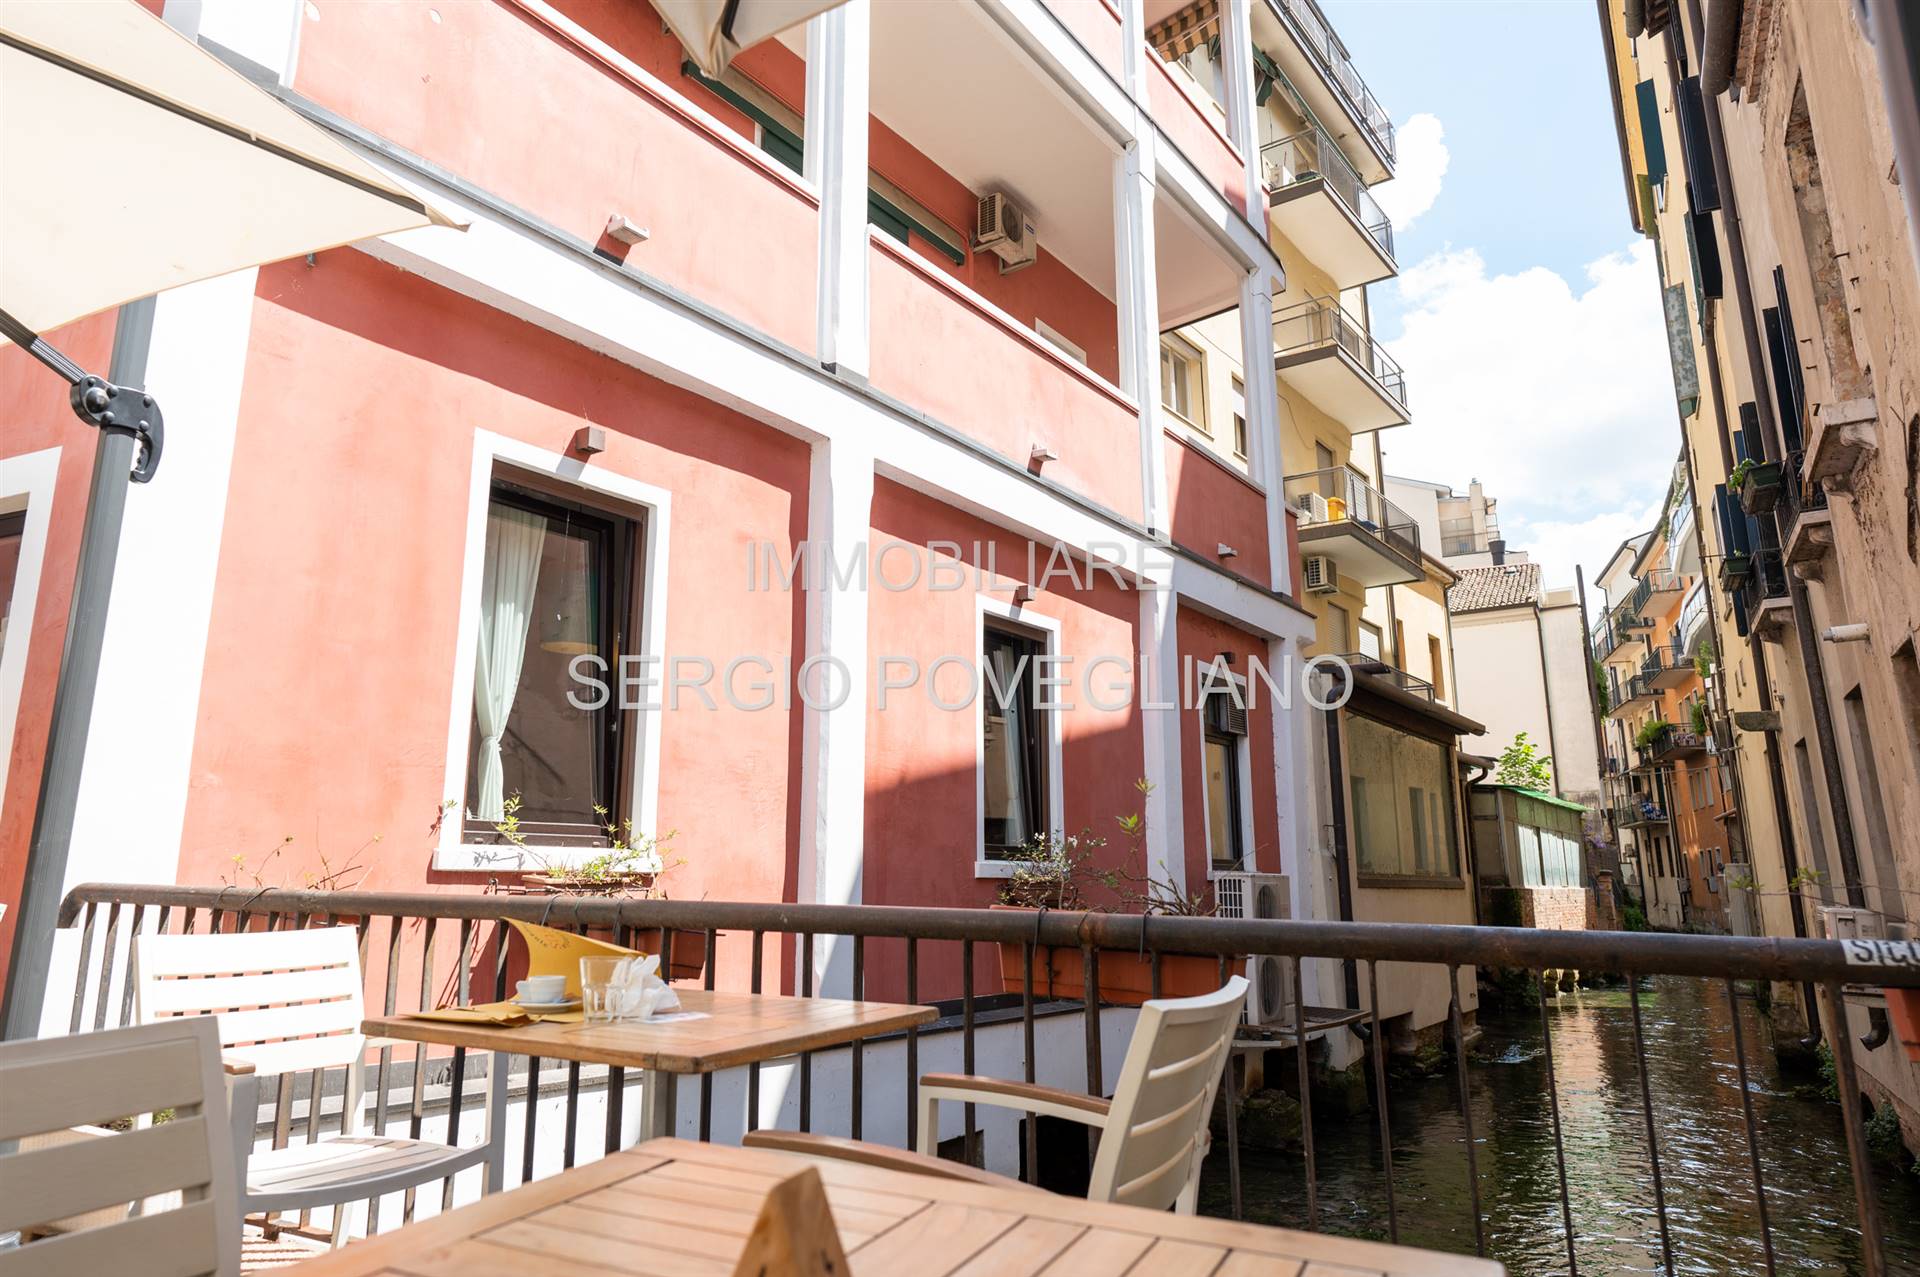 Appartamento abitabile in zona Centro Storico a Treviso